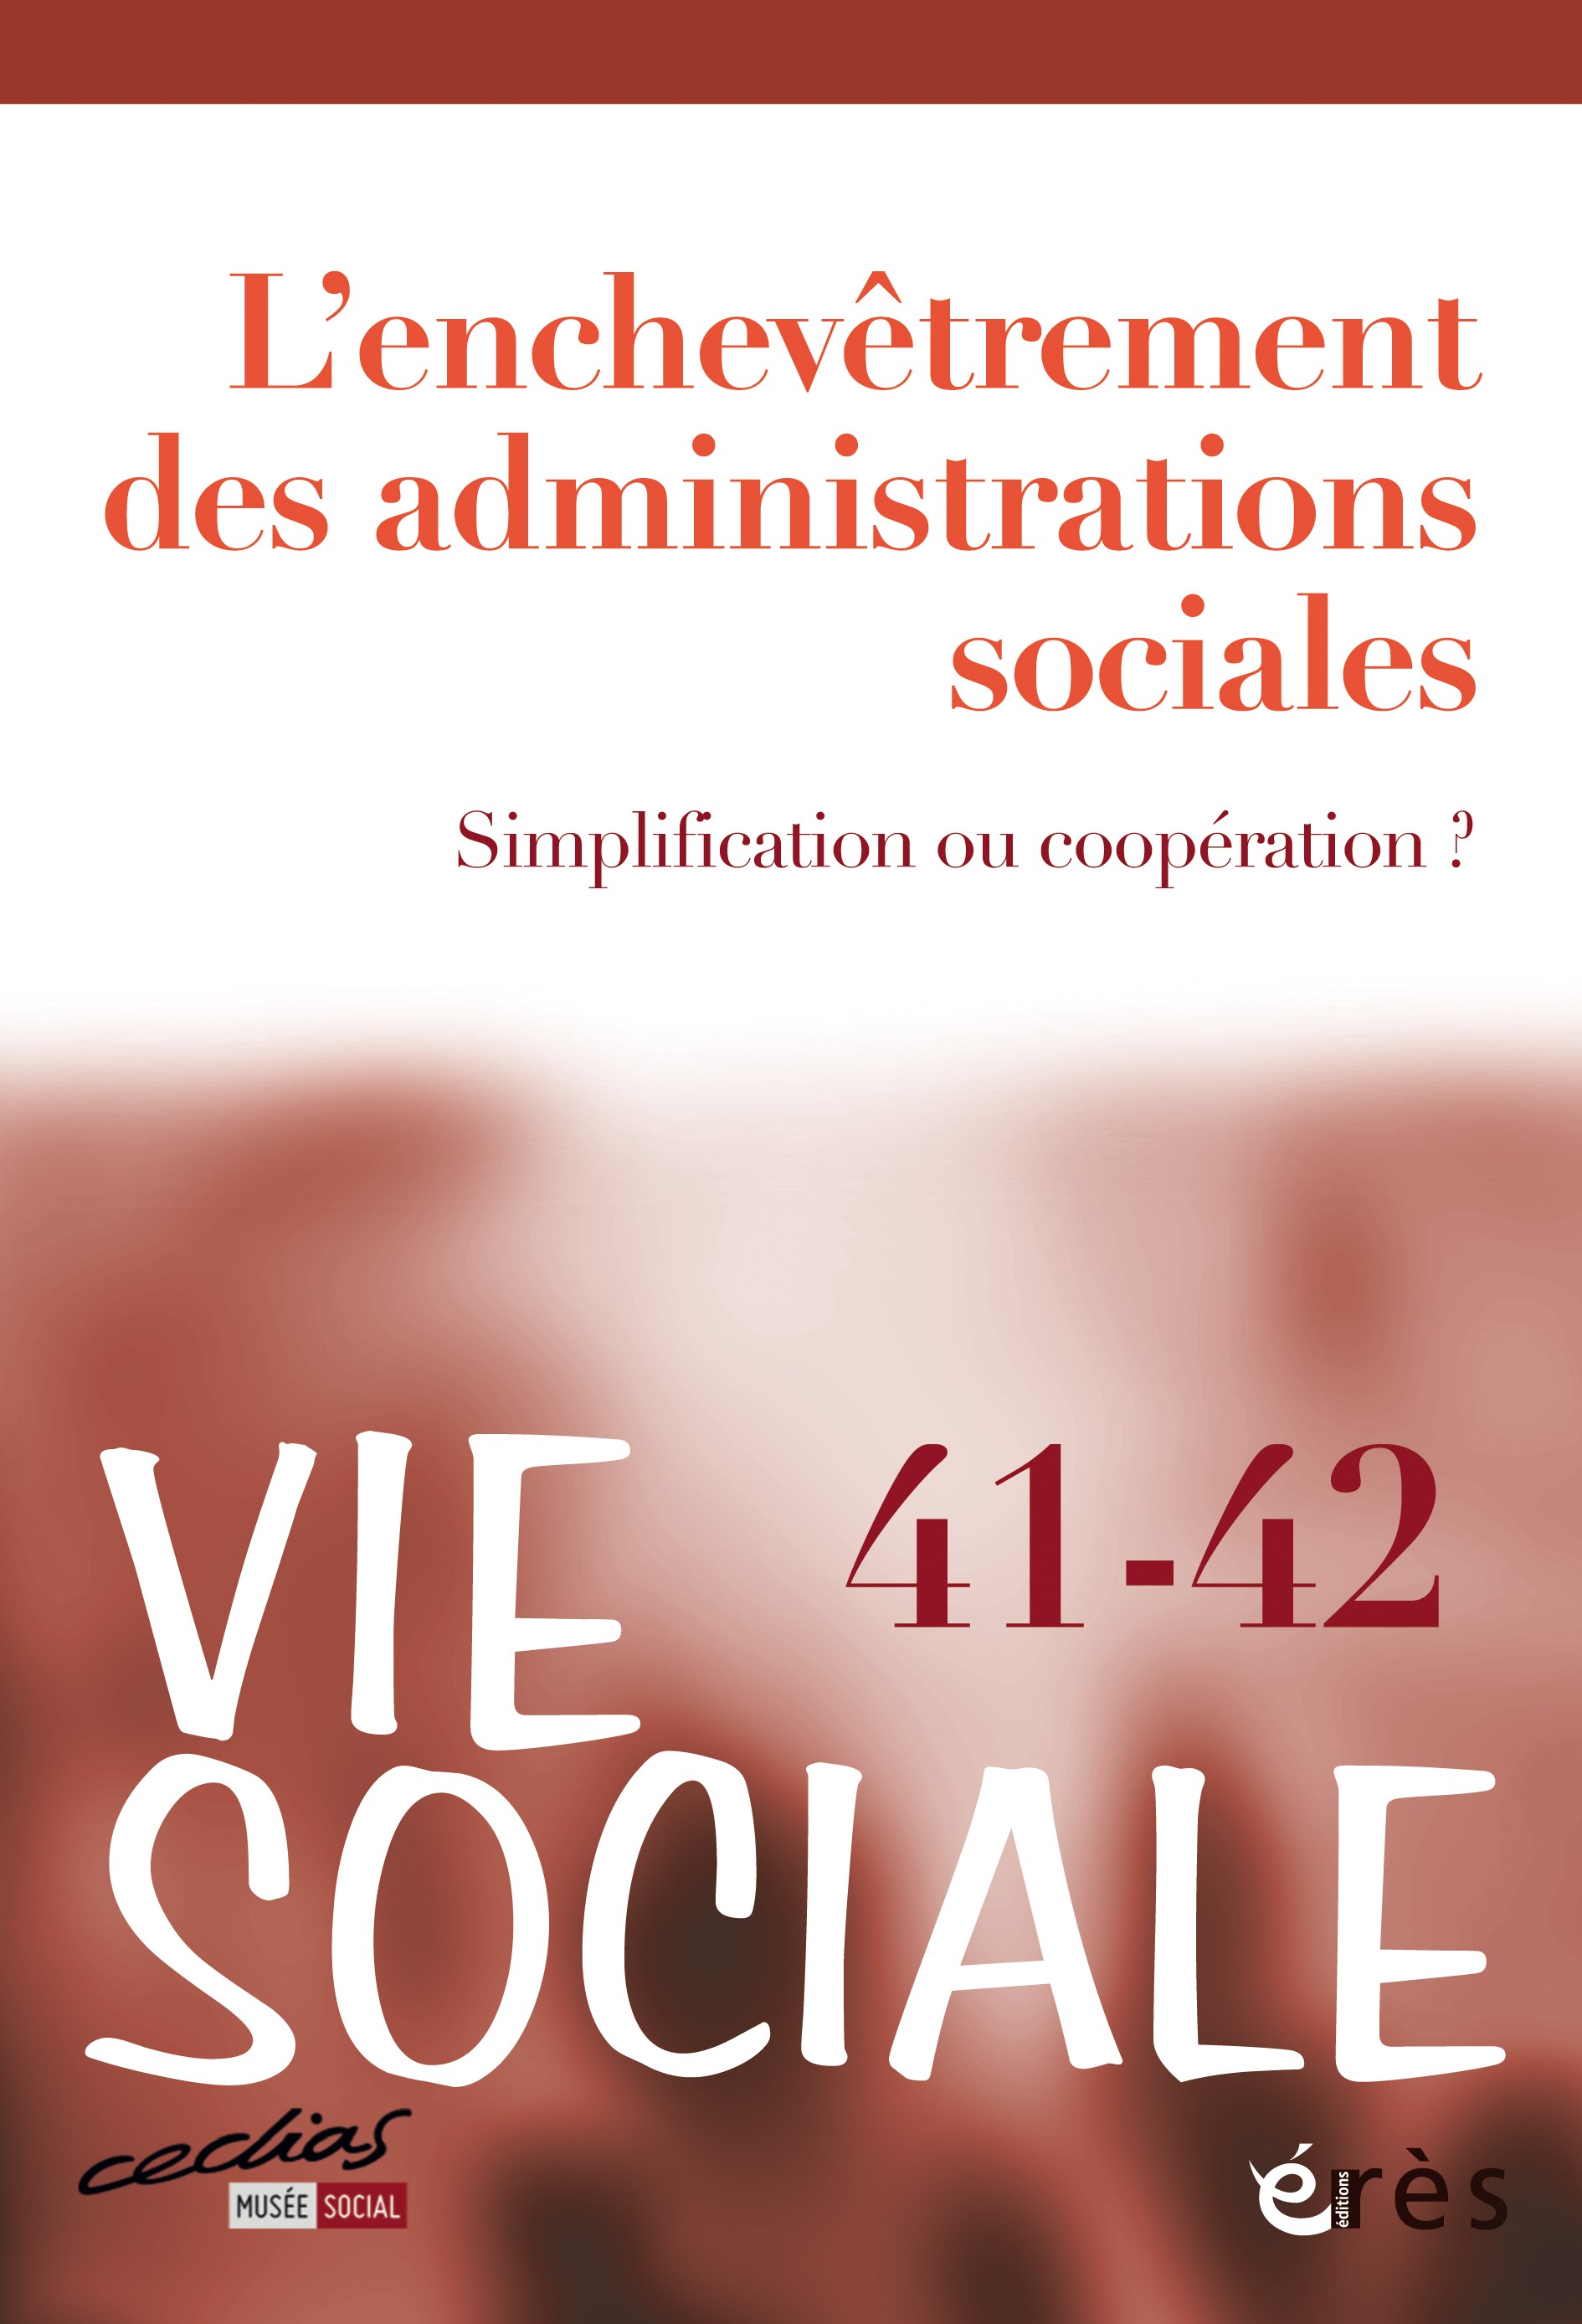 Vie sociale. Dossier « L’enchevêtrement des administrations sociales »